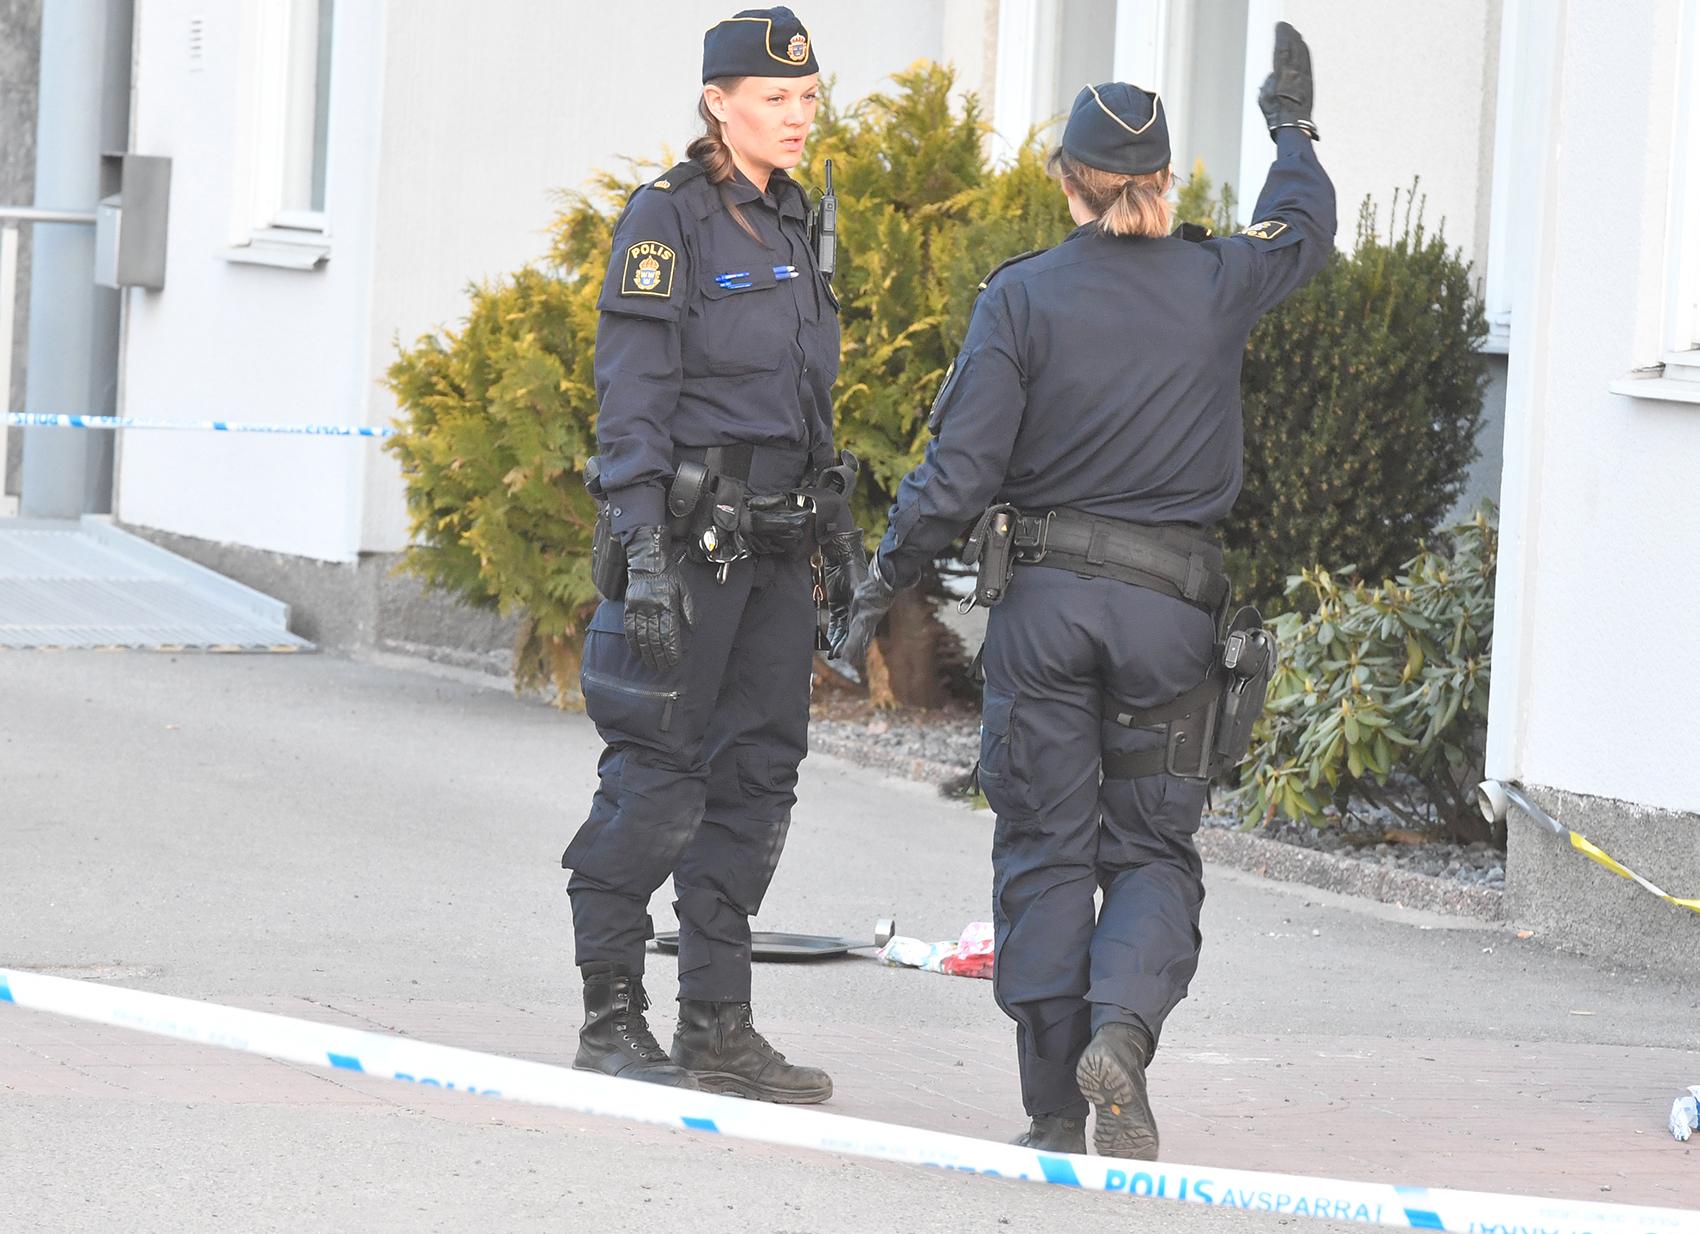 Polis sköt verkanseld mot en knivbeväpnad man i Skärholmen efter larm om ett bråk i en lägenhet.